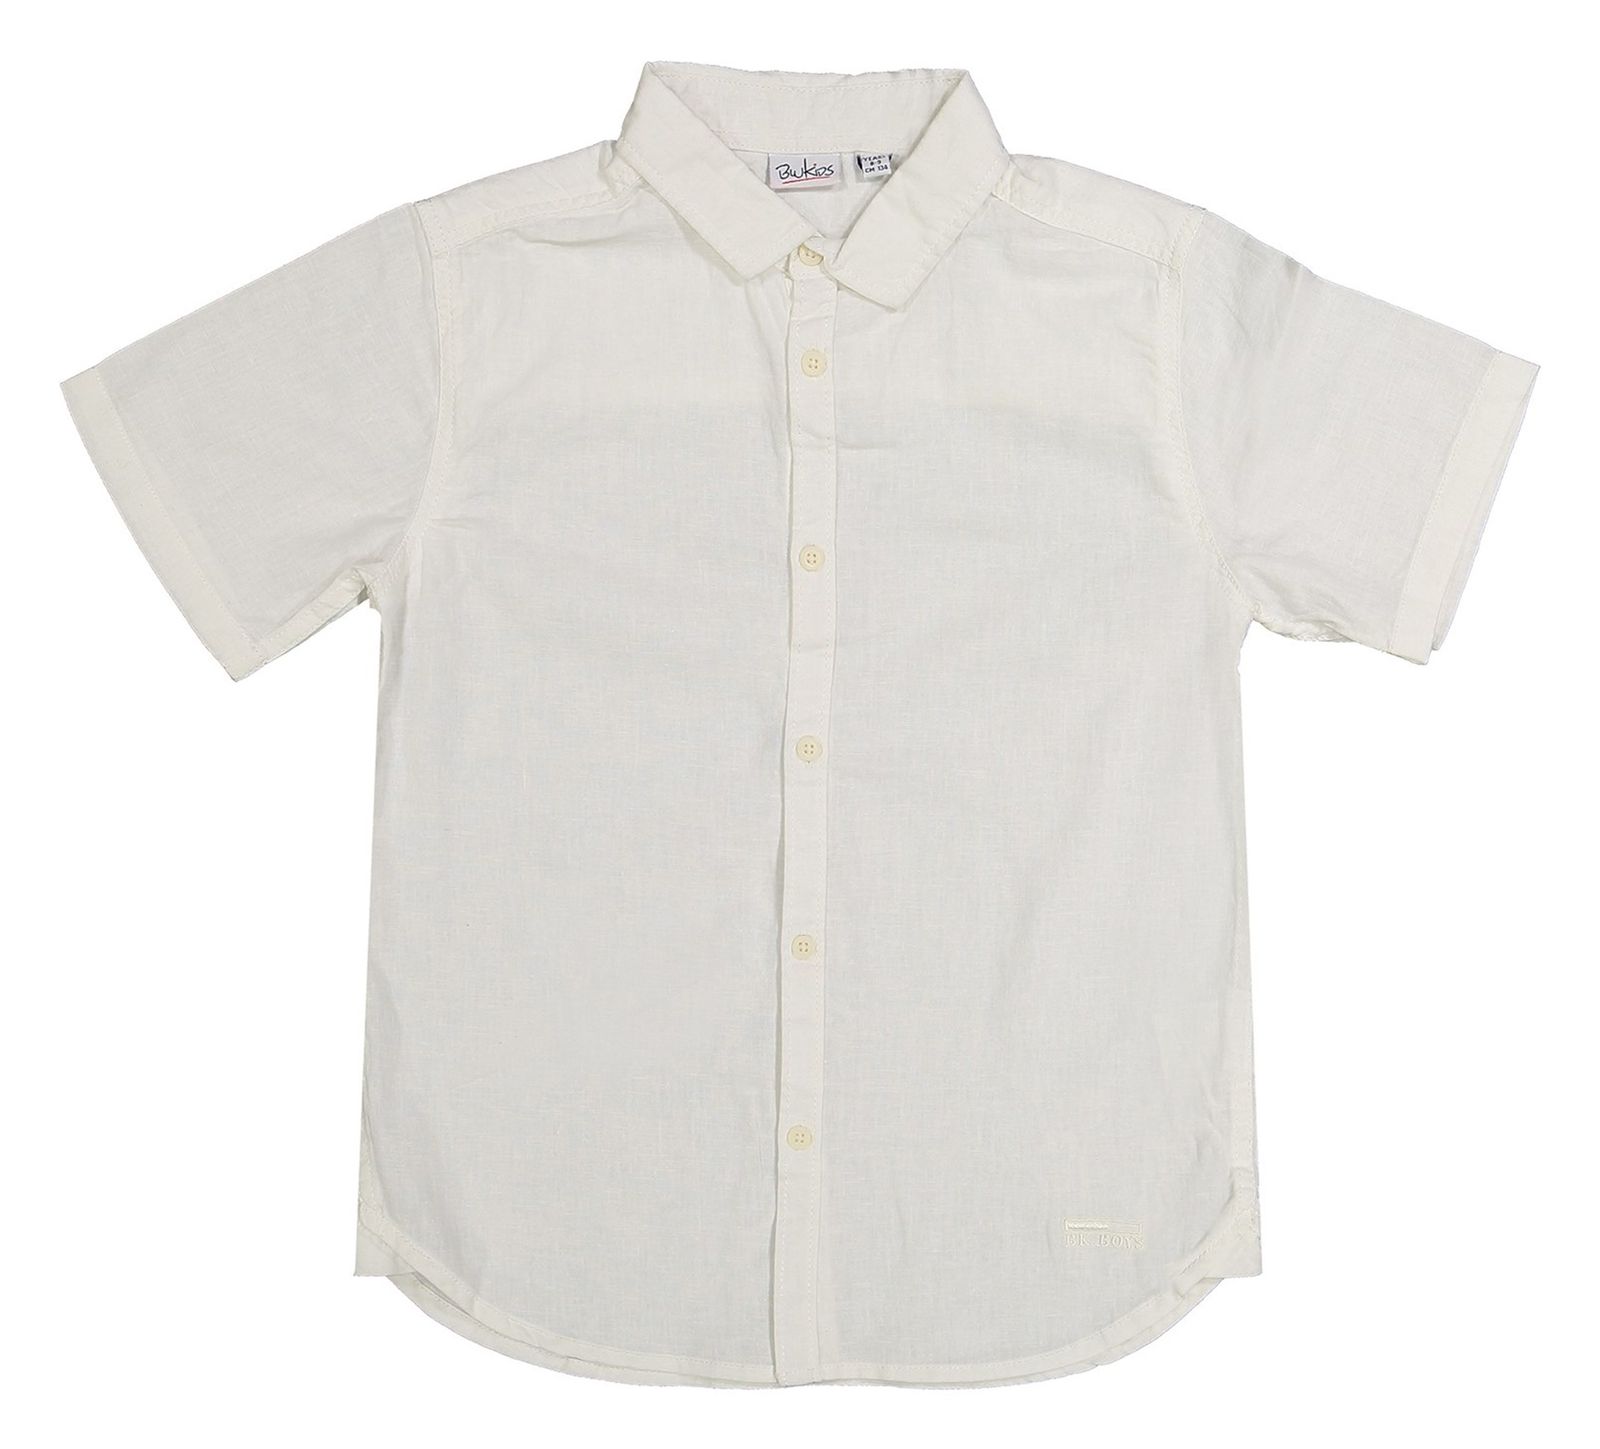 پیراهن آستین کوتاه پسرانه - بلوکیدز - سفید - 1